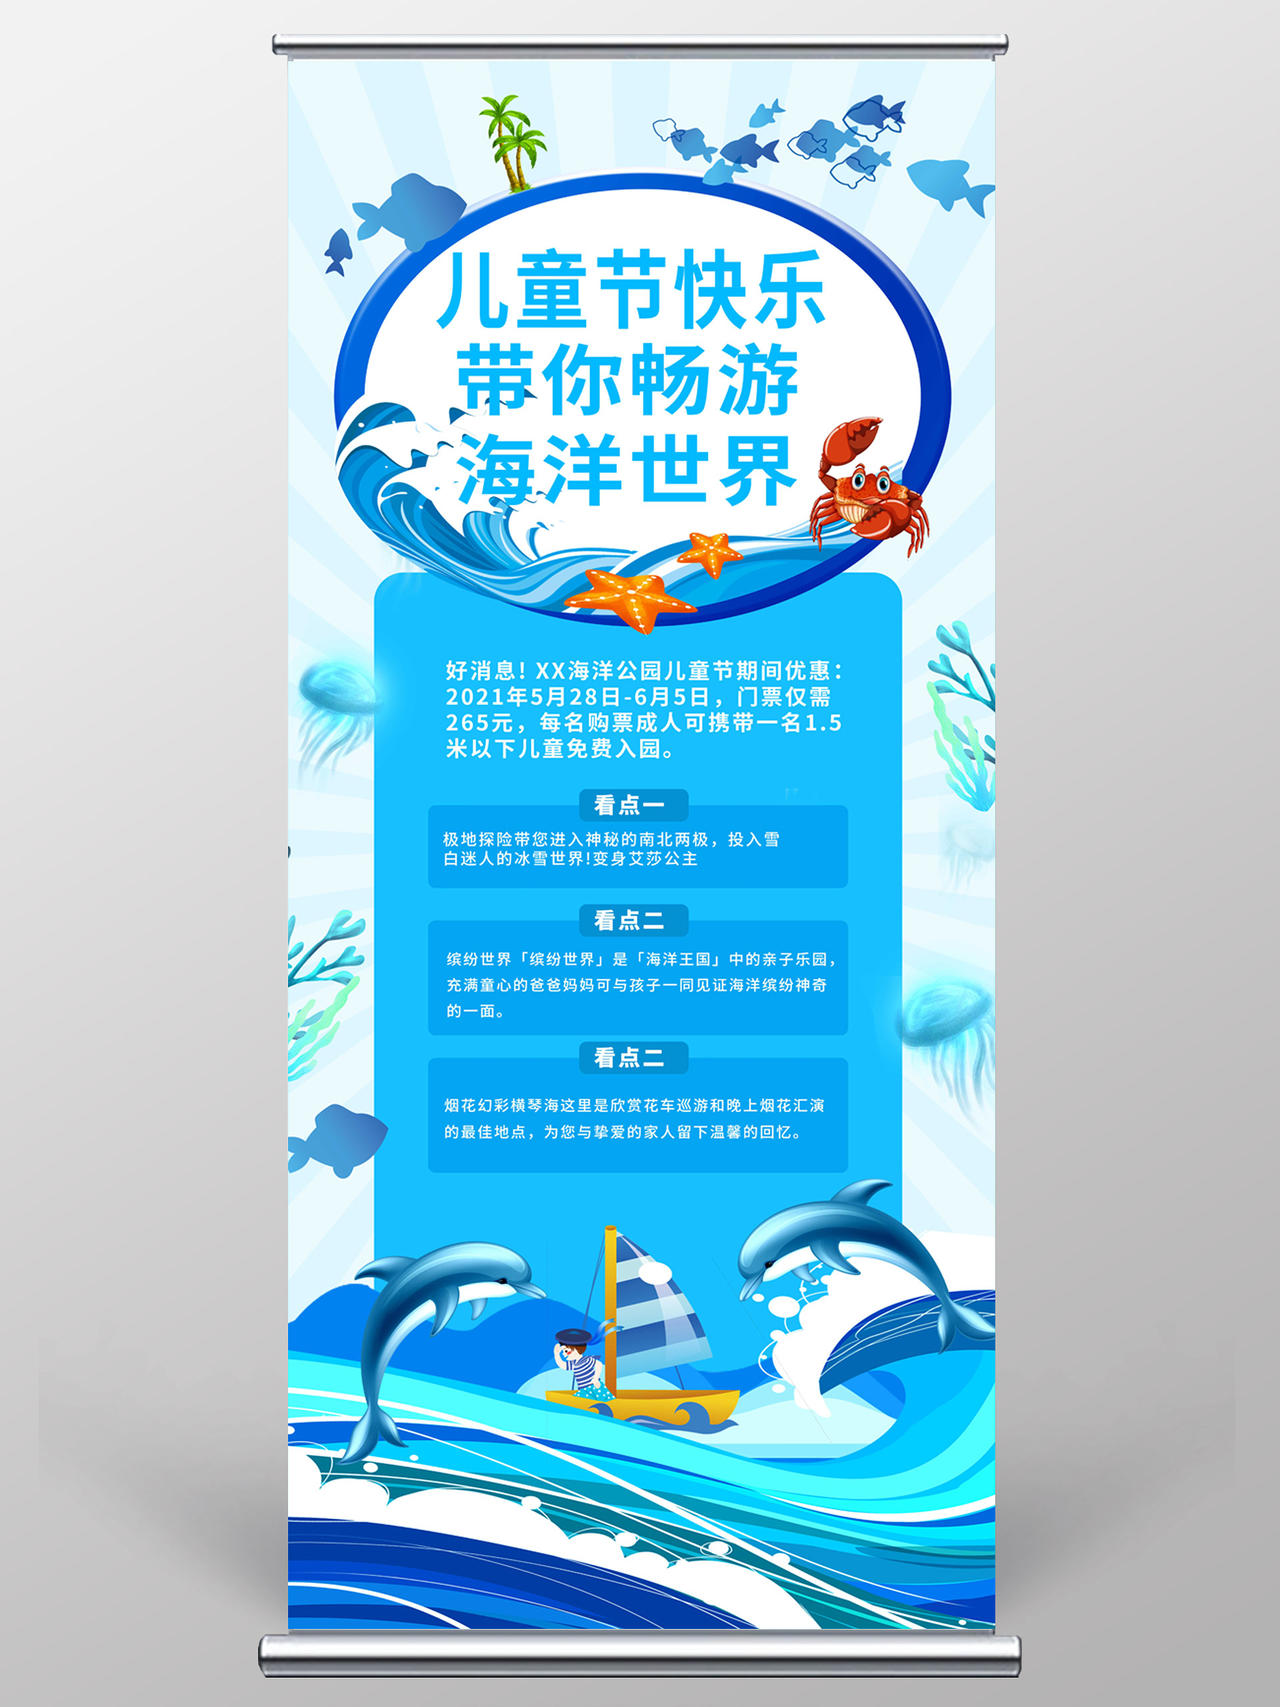 蓝色简洁创意儿童节快乐带你畅游海洋世界61促销宣传易拉宝儿童节展架